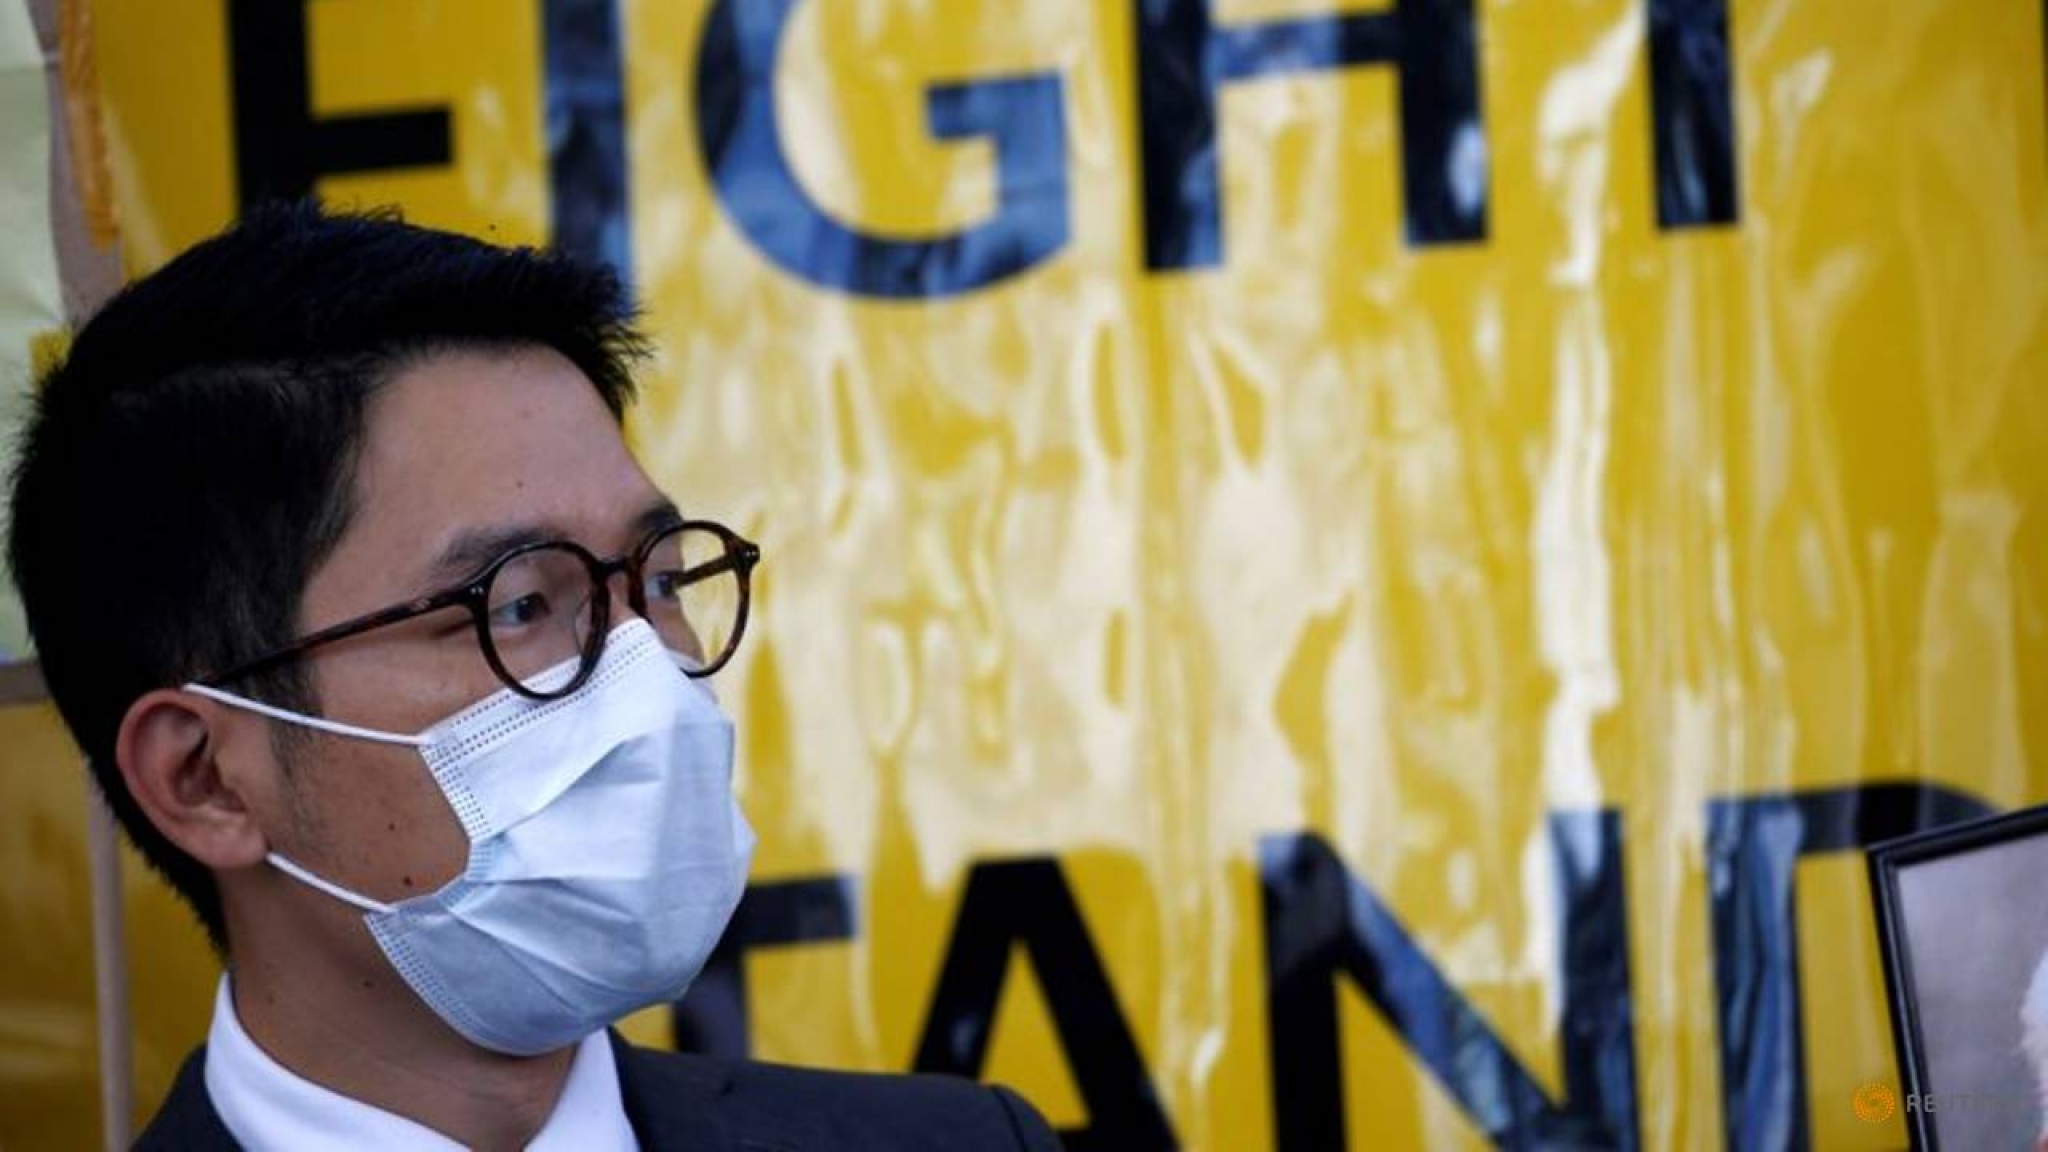 Hong Kong democracy activist Nathan Law granted political asylum by Britain